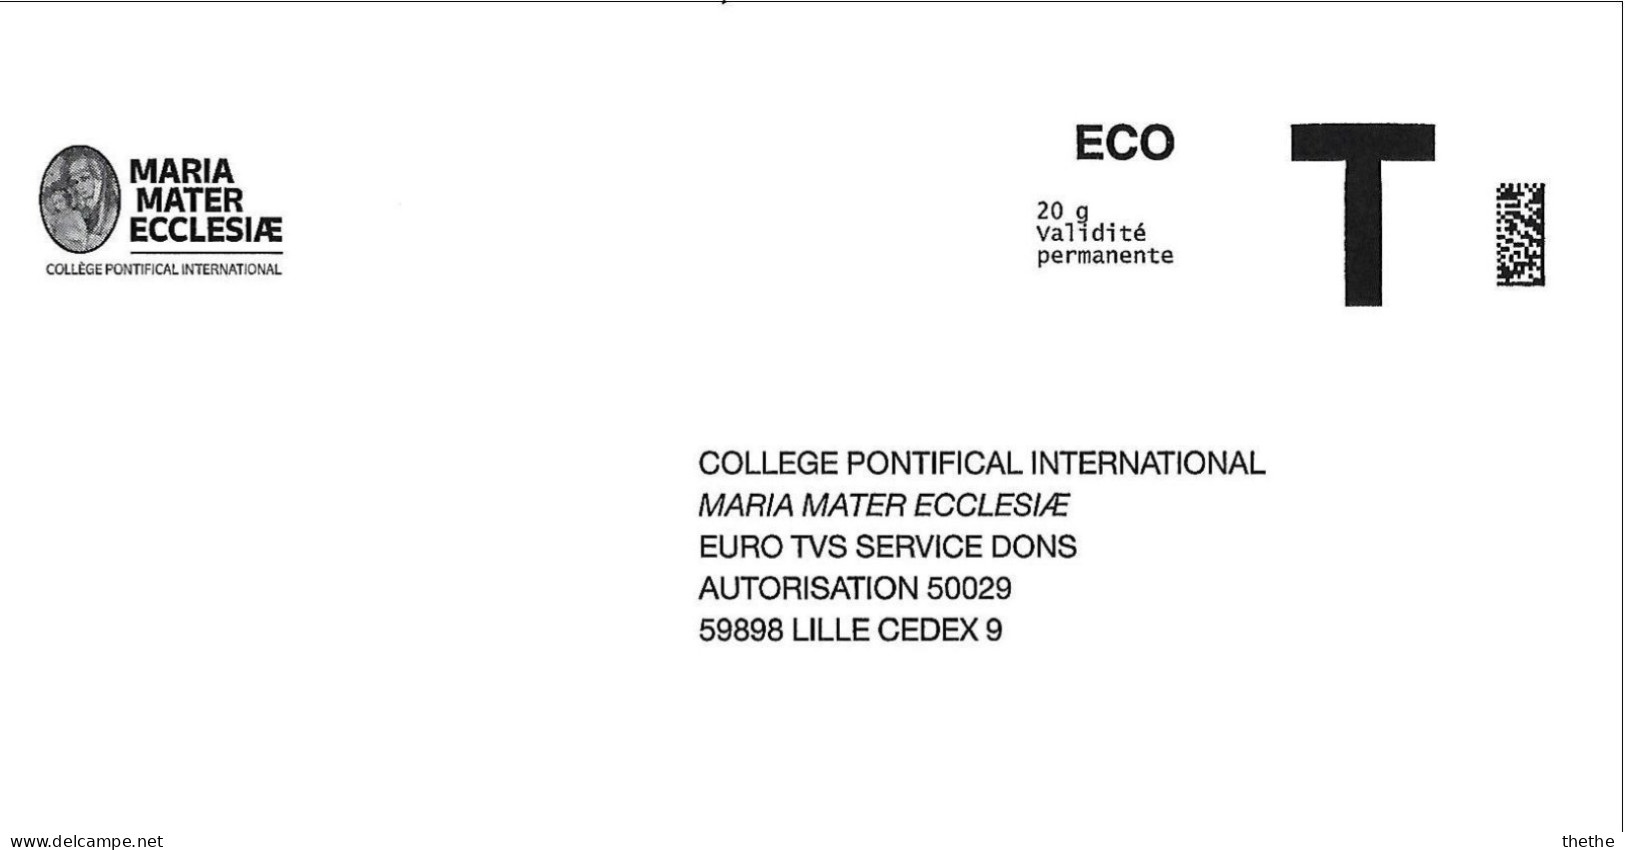 Enveloppe Réponse T - ECO - MARIA MATER ECCLESIA - 20 G Validité Permanente (Collége Pontifical International) - Cartes/Enveloppes Réponse T